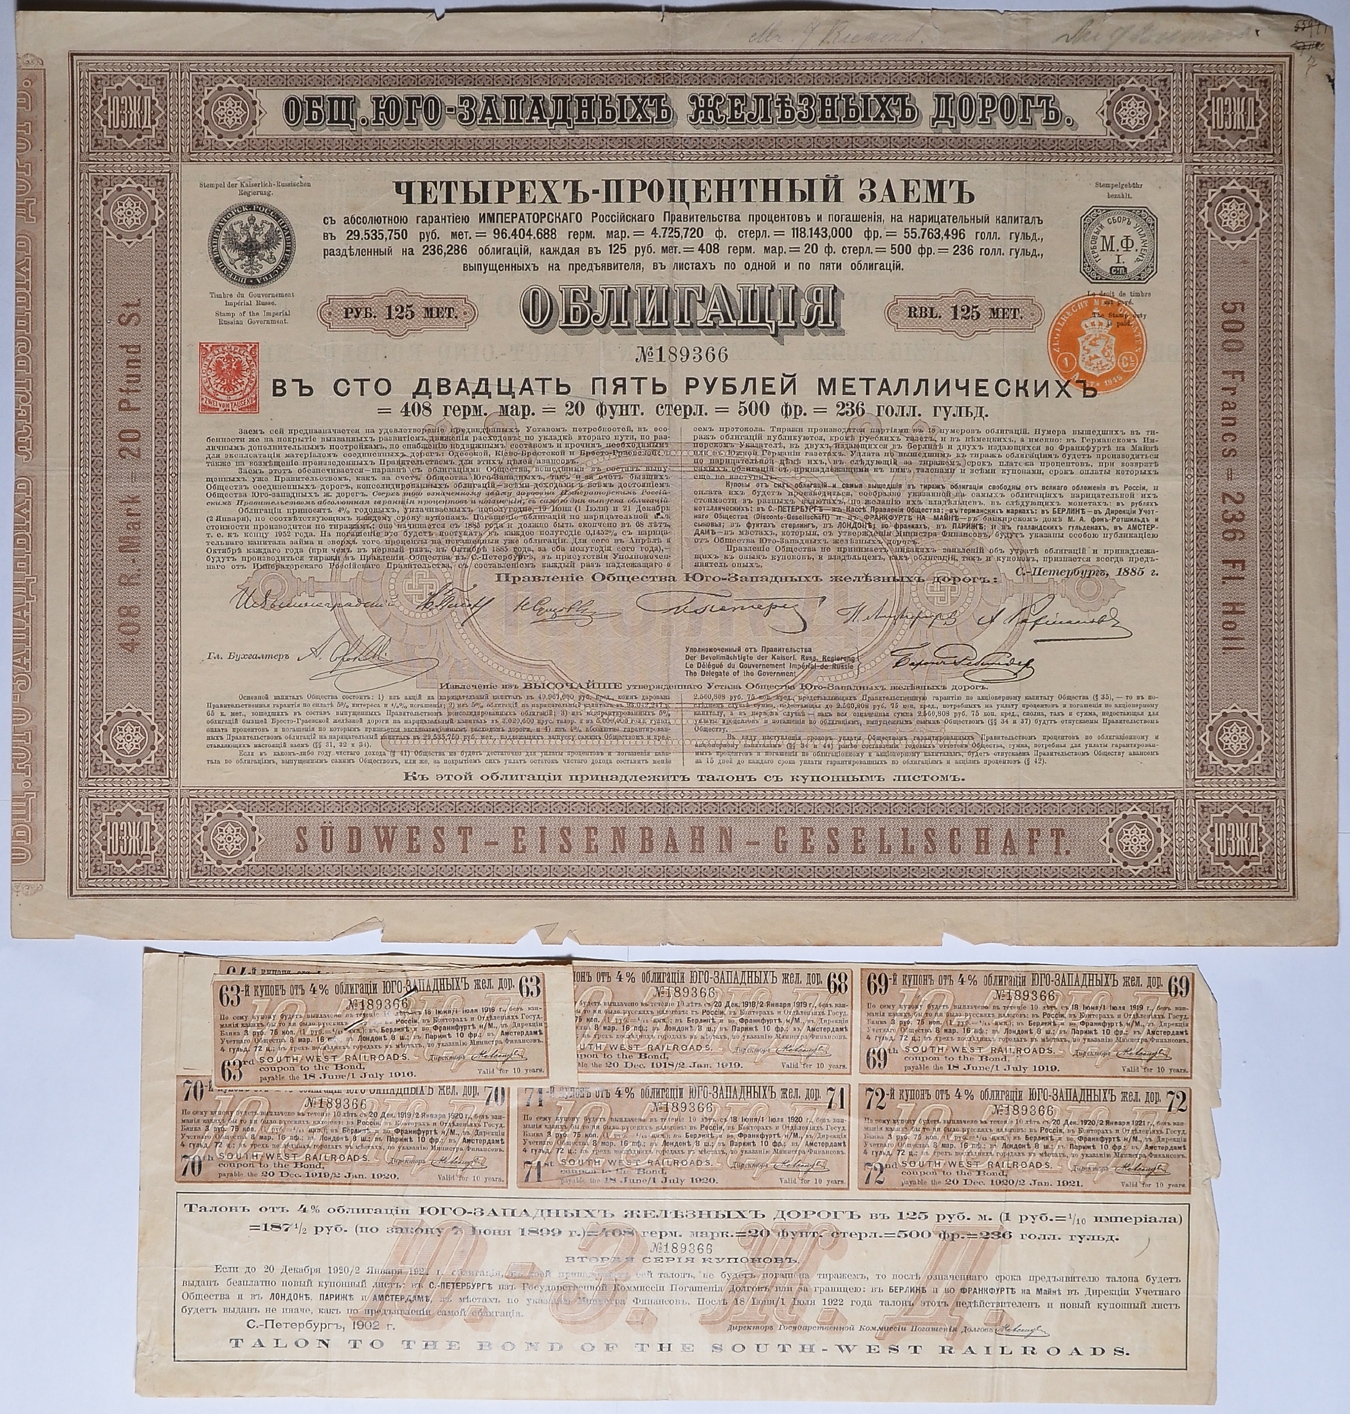 5 рублей облигация. Облигация 1918 года. Ценные бумаги США на предъявителя. Российские ценные бумаги дорогие\. Уссурийская железная дорога ценная бумага.